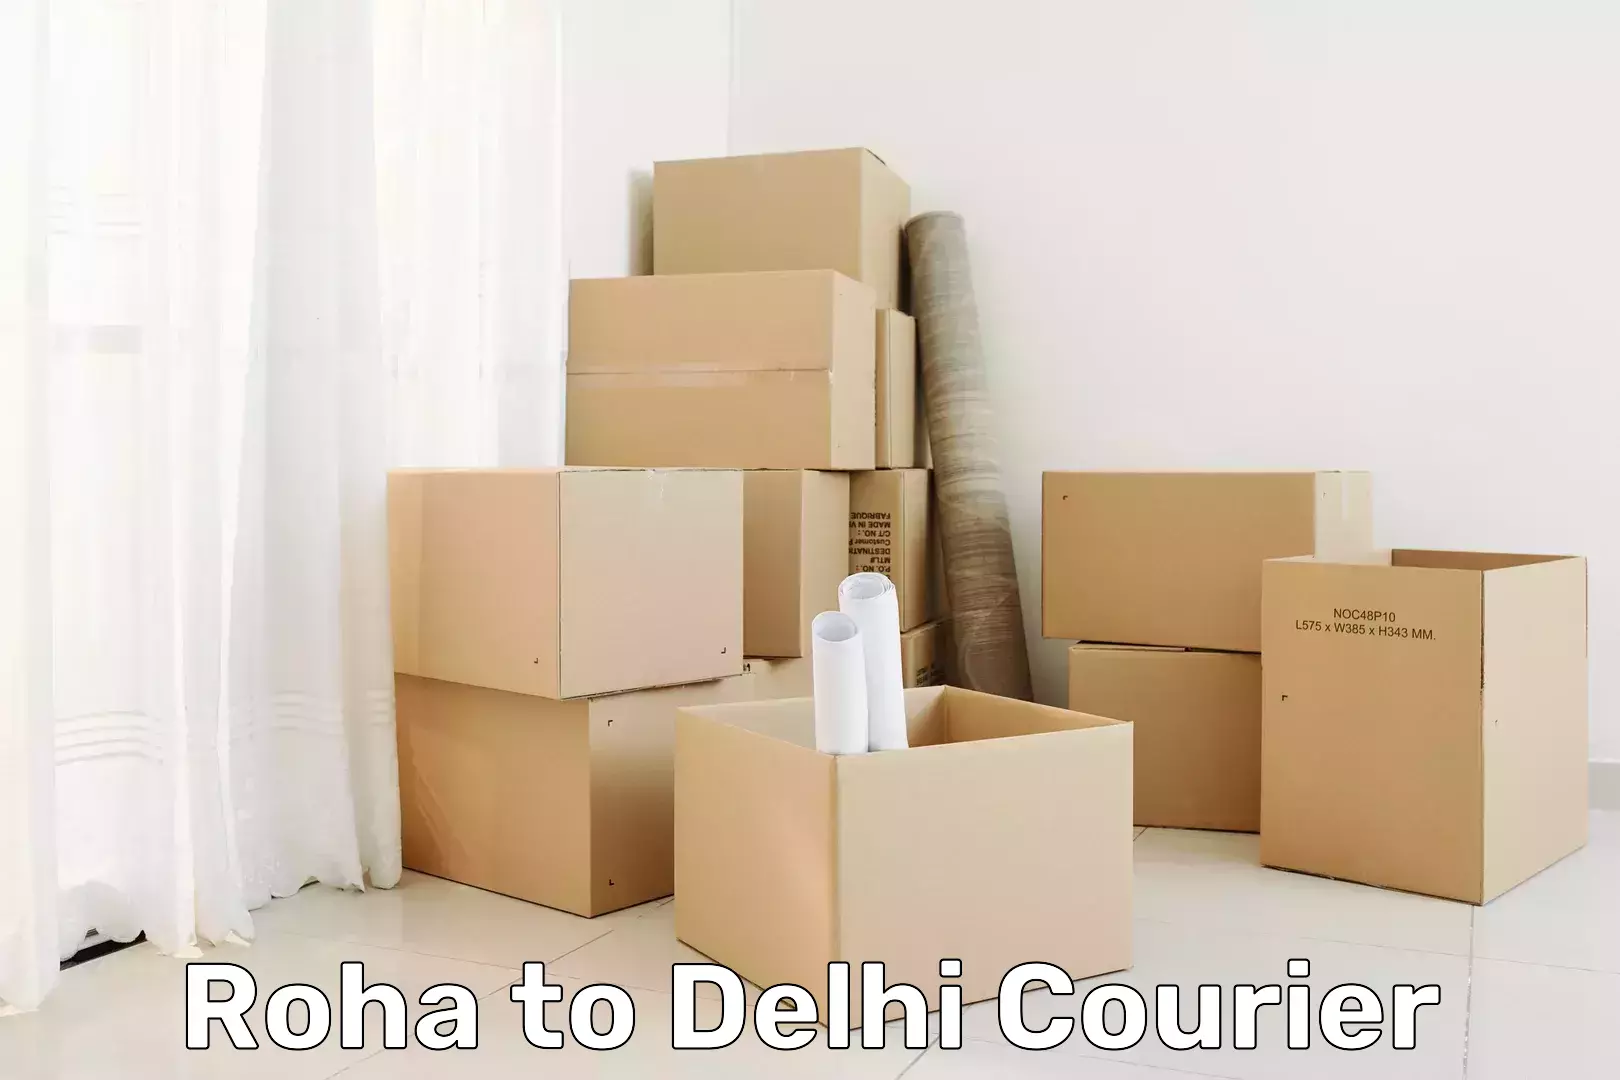 Courier service comparison in Roha to Delhi